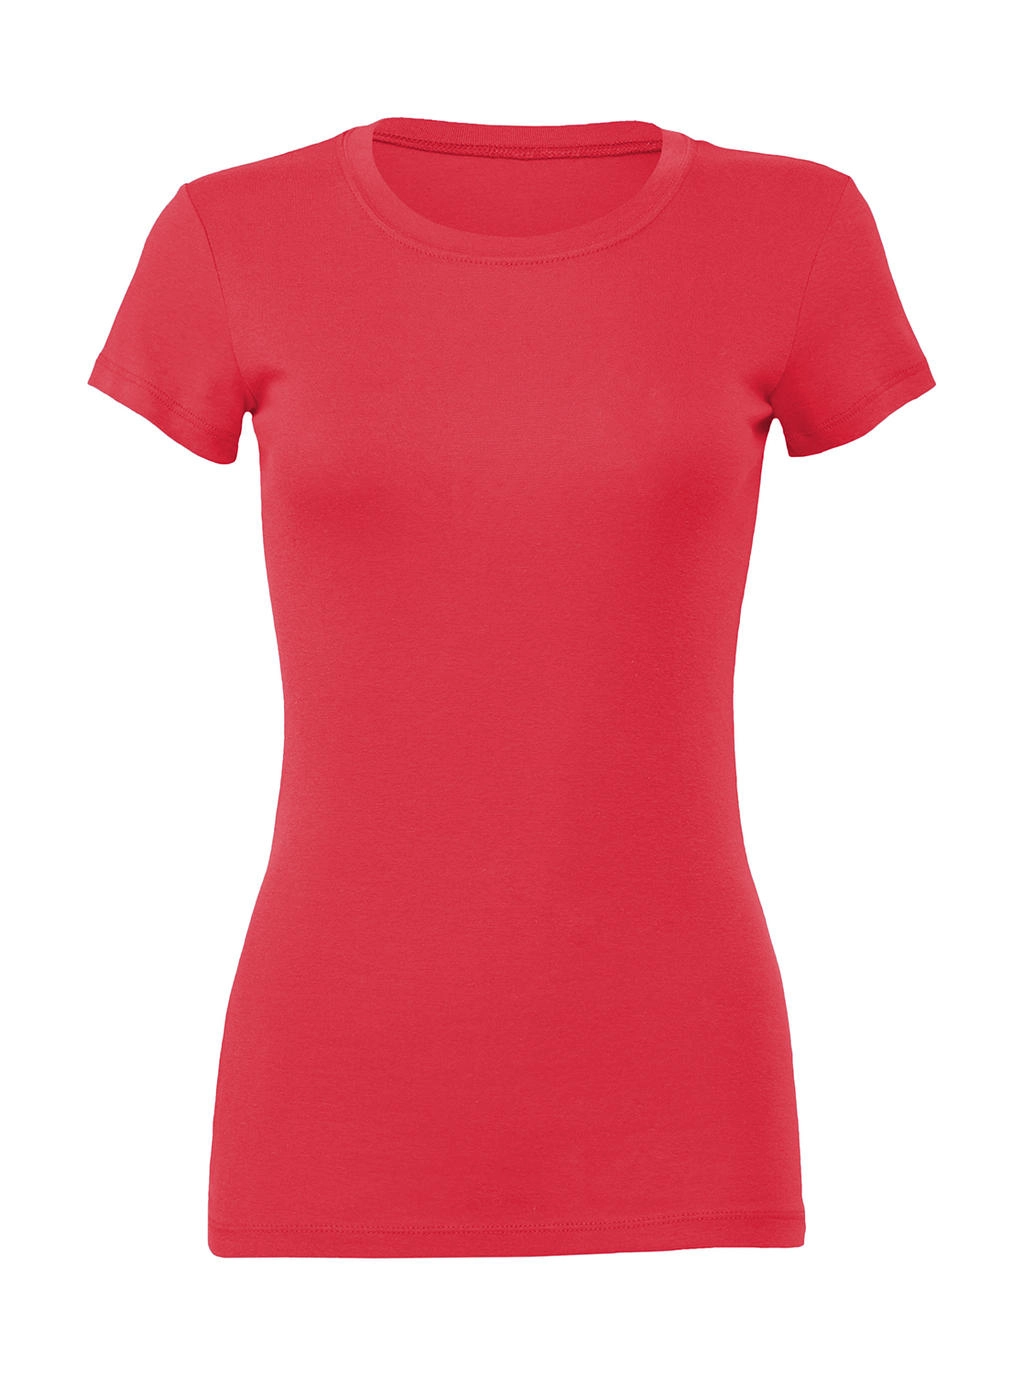 The Favorite T-Shirt zum Besticken und Bedrucken in der Farbe Coral mit Ihren Logo, Schriftzug oder Motiv.